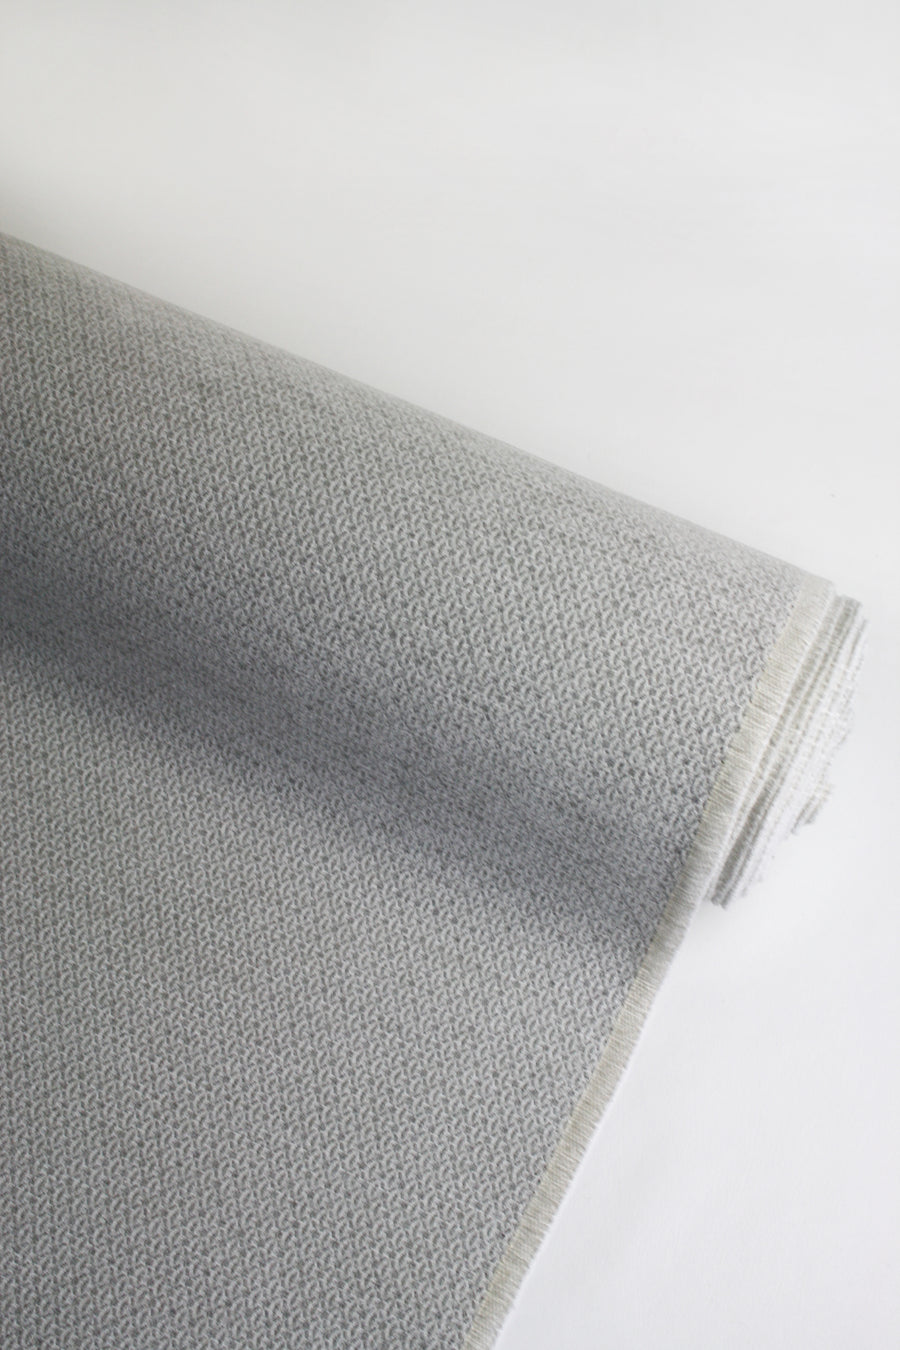 Domaine - Italian Textured Velvet | Cement